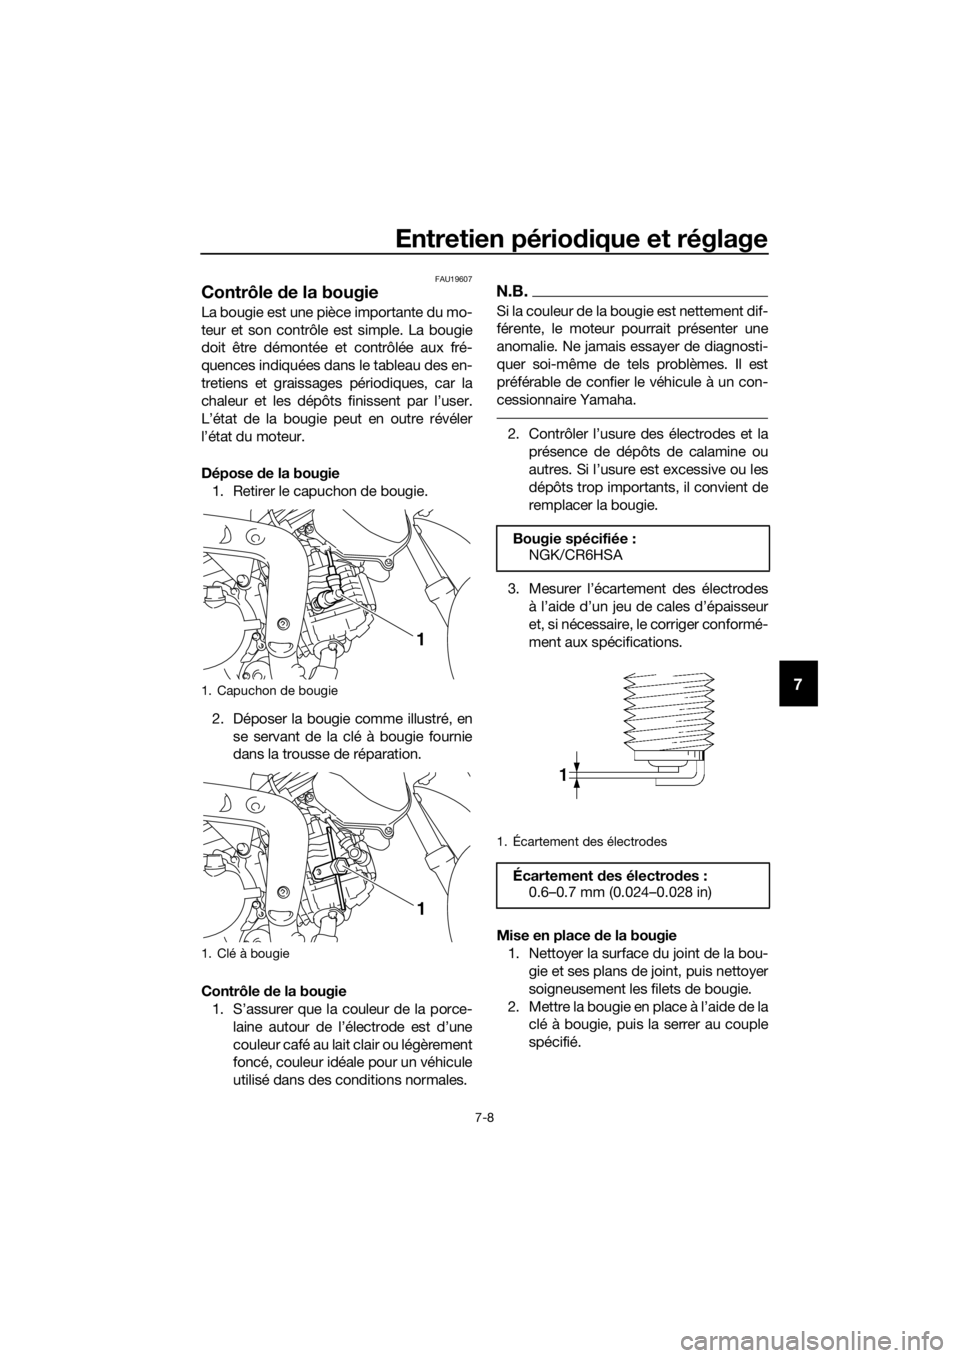 YAMAHA TT-R110E 2021  Notices Demploi (in French) Entretien périodique et réglage
7-8
7
FAU19607
Contrôle de la bougie
La bougie est une pièce importante du mo-
teur et son contrôle est simple. La bougie
doit être démontée et contrôlée aux 